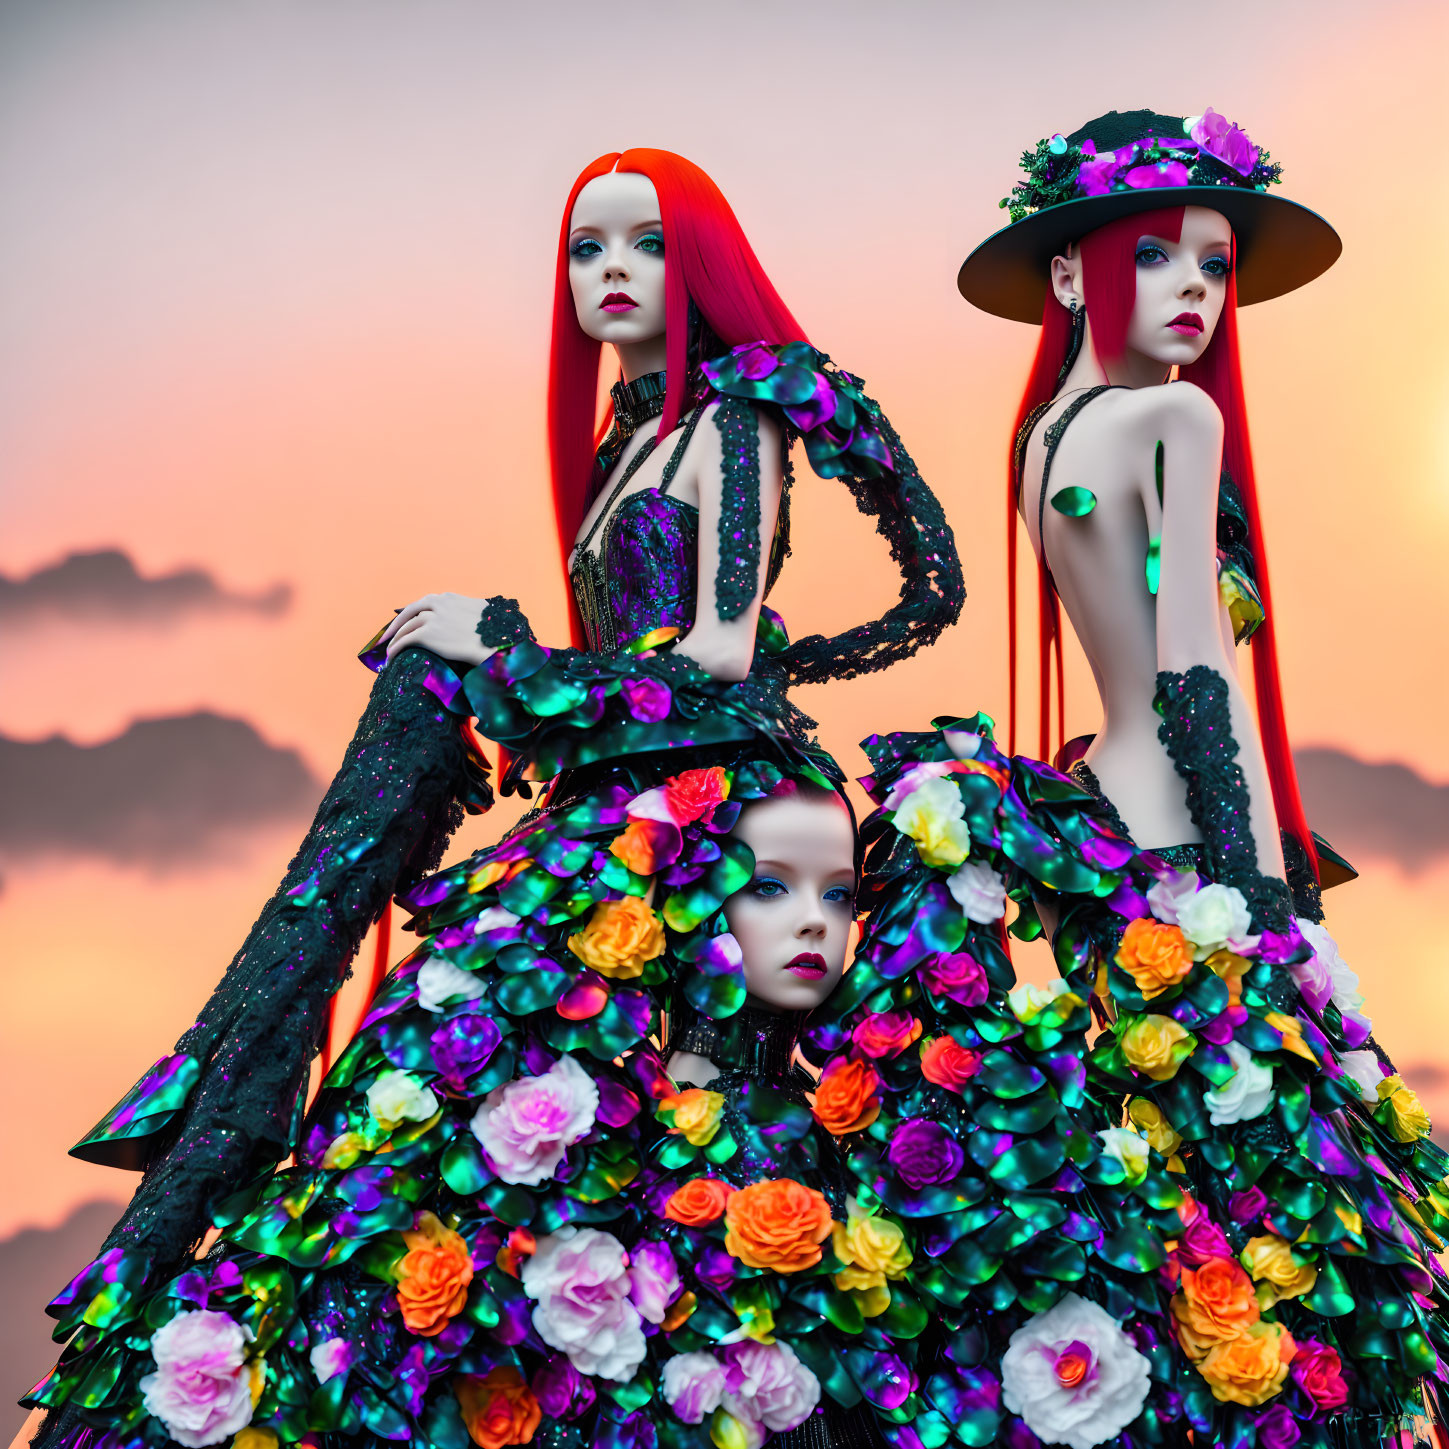 Mannequins in Floral Dresses Under Sunset Sky